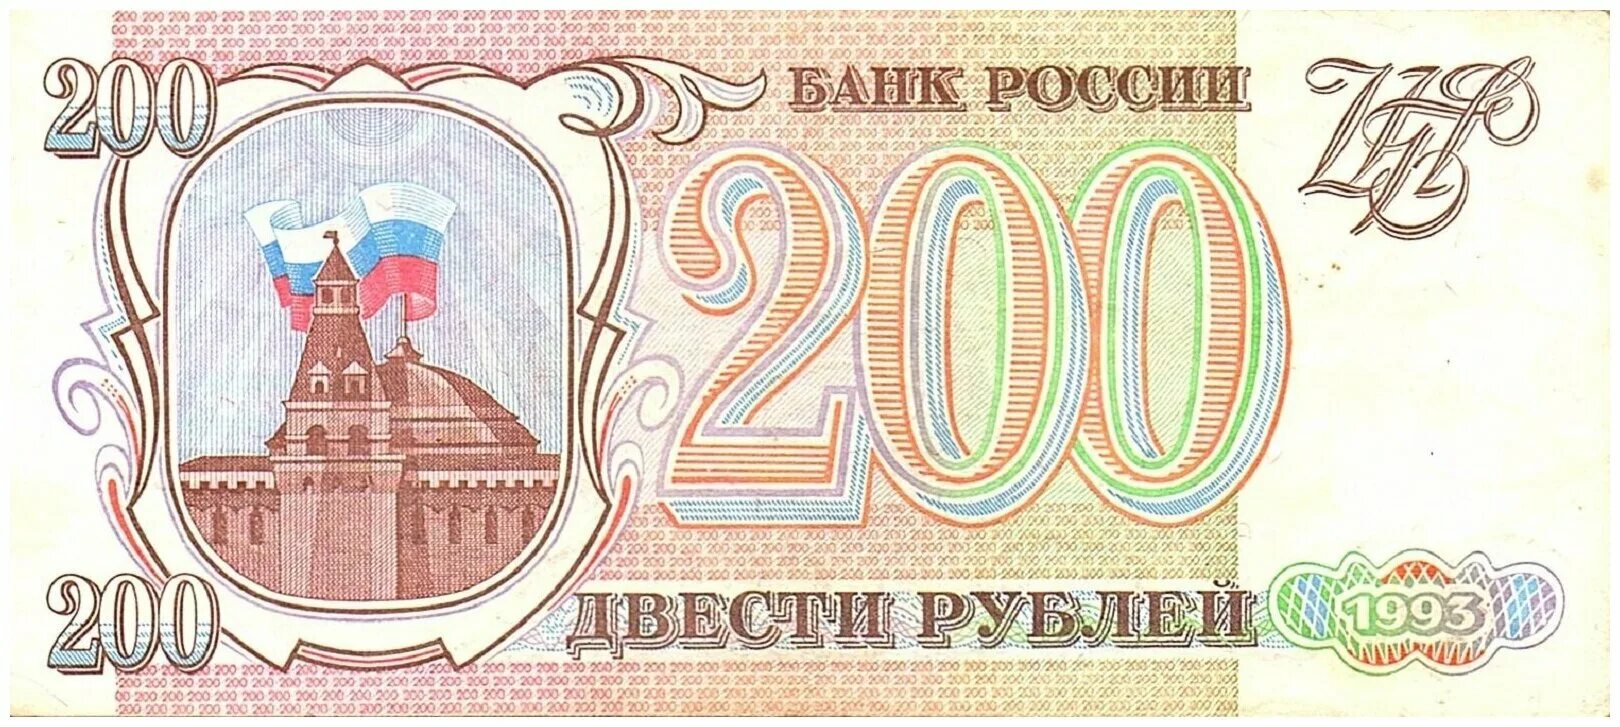 200 г в рублях. Купюра 200 рублей 1993. Банкнота 200 рублей 1993. Банкнота 200 рублей 1993 года. Двести рублей 1993 года.